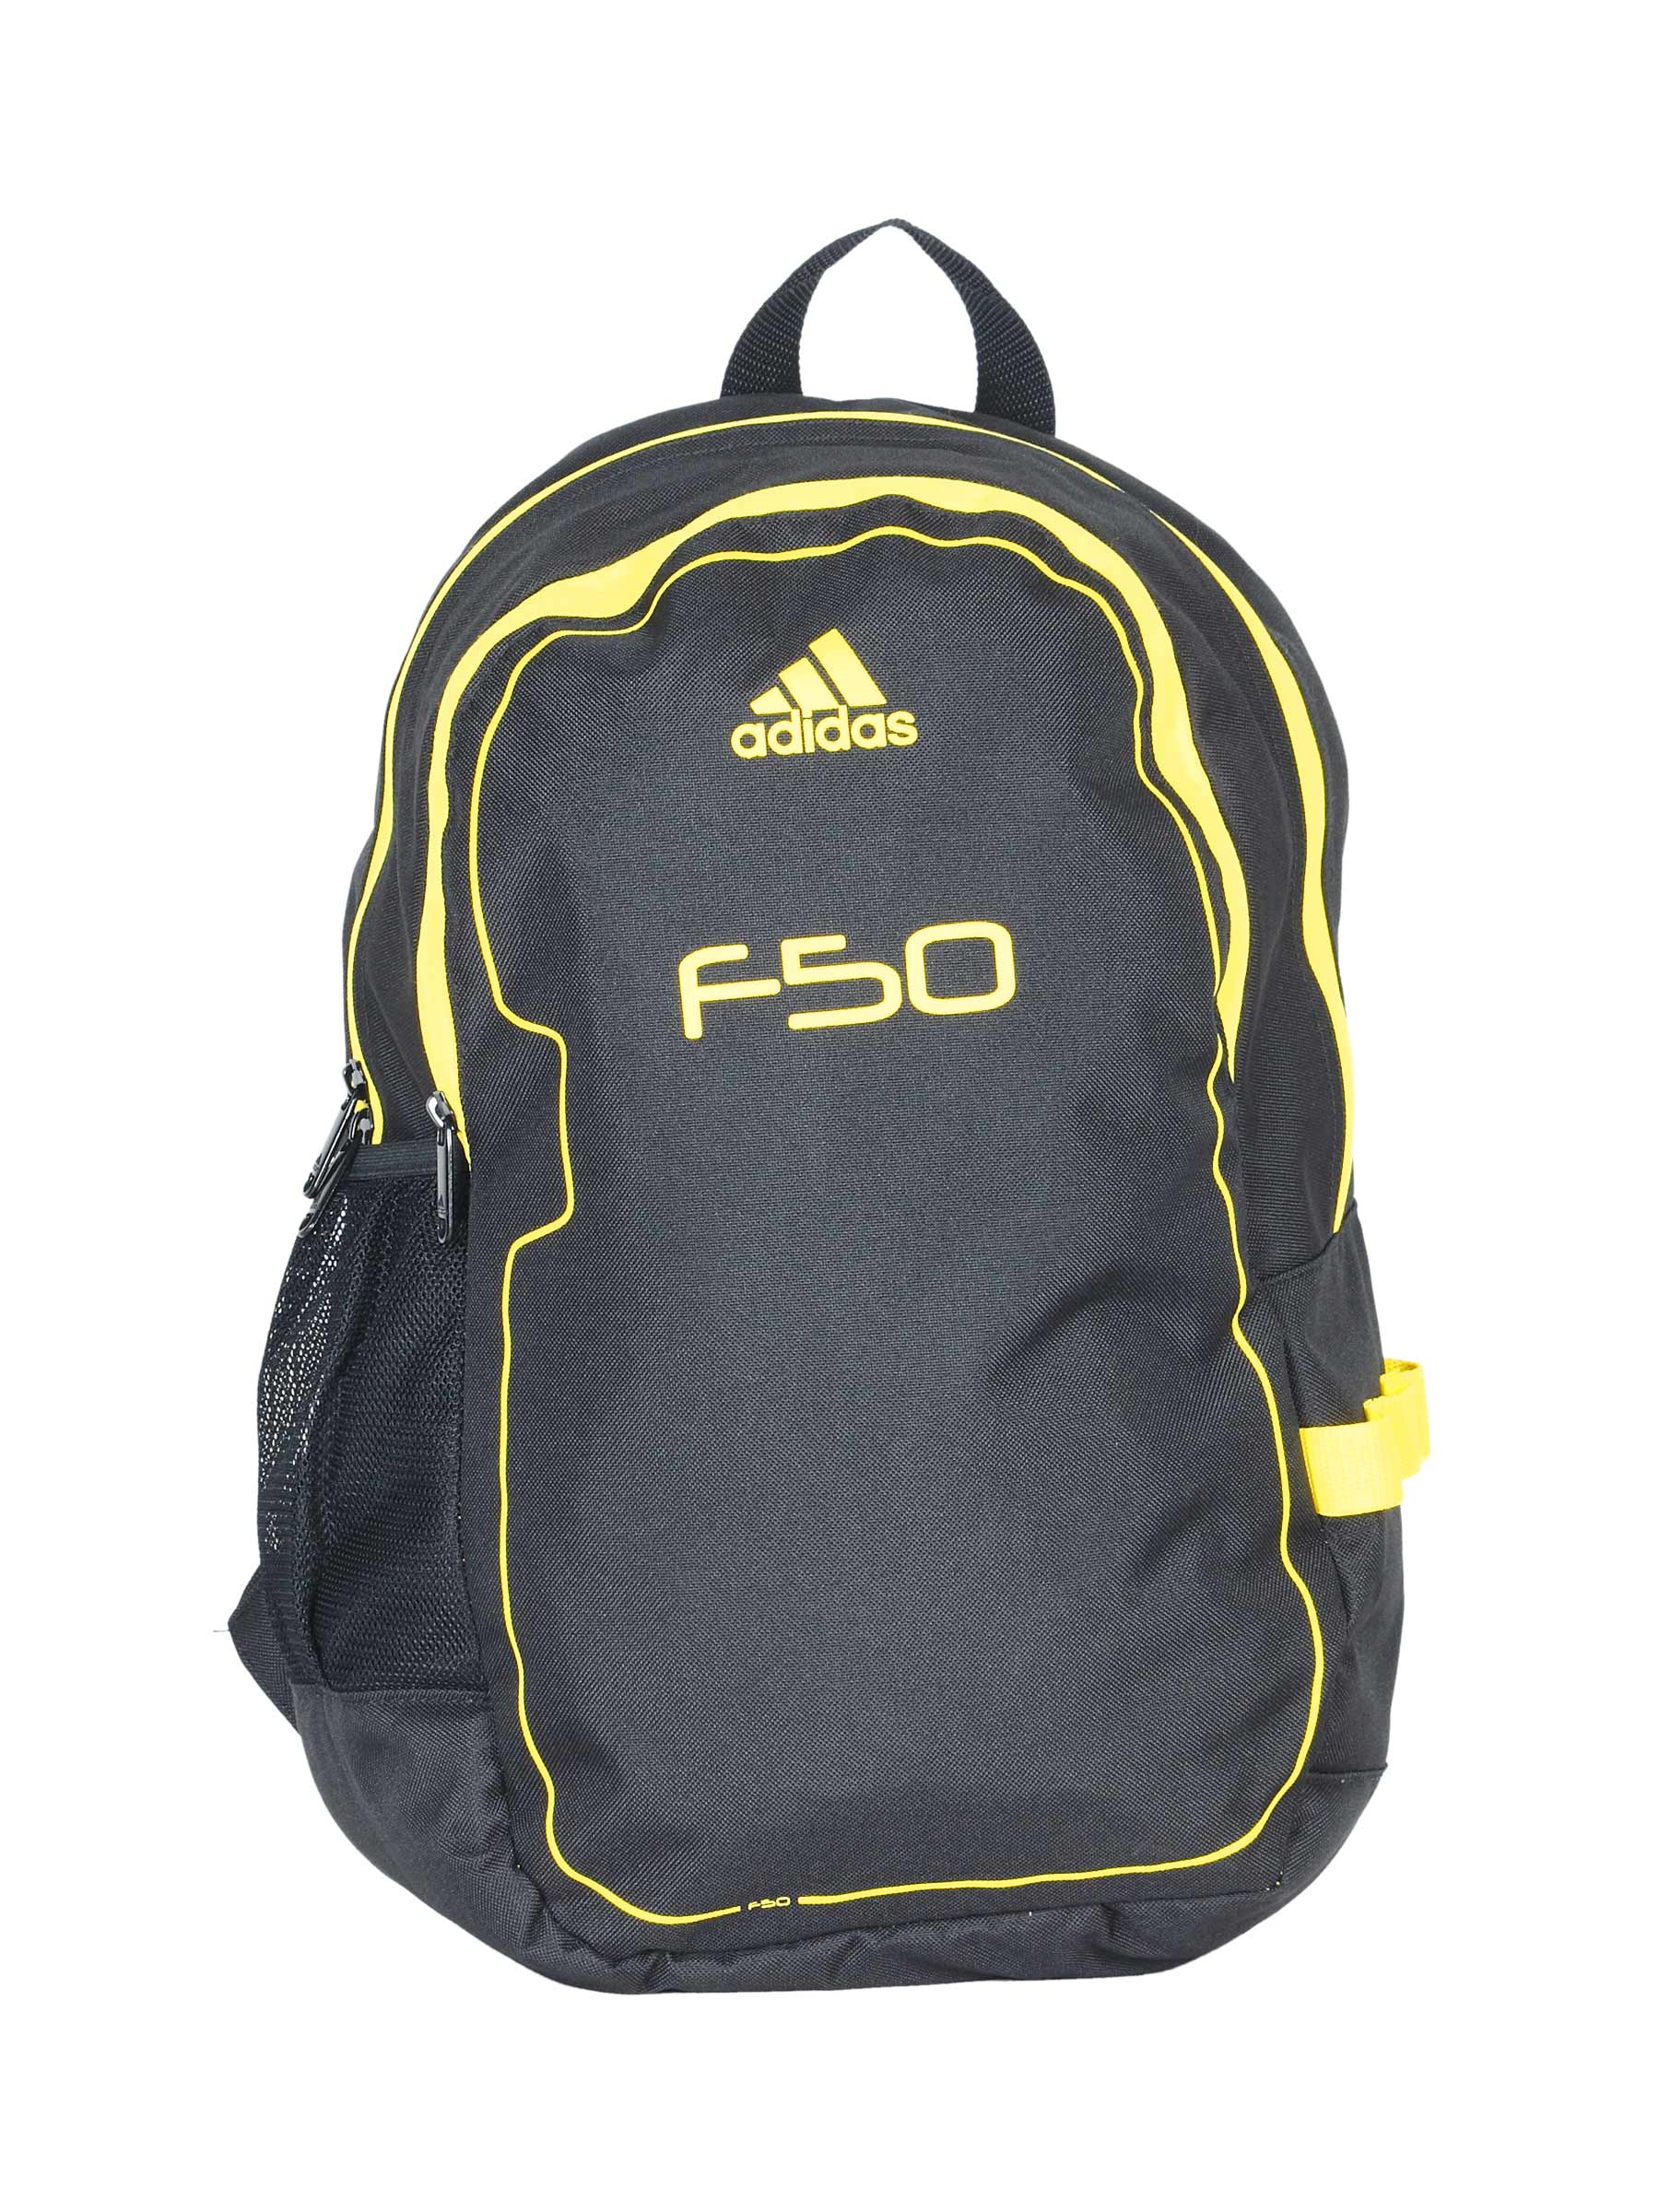 ADIDAS Unisex F50 Black Backpacks